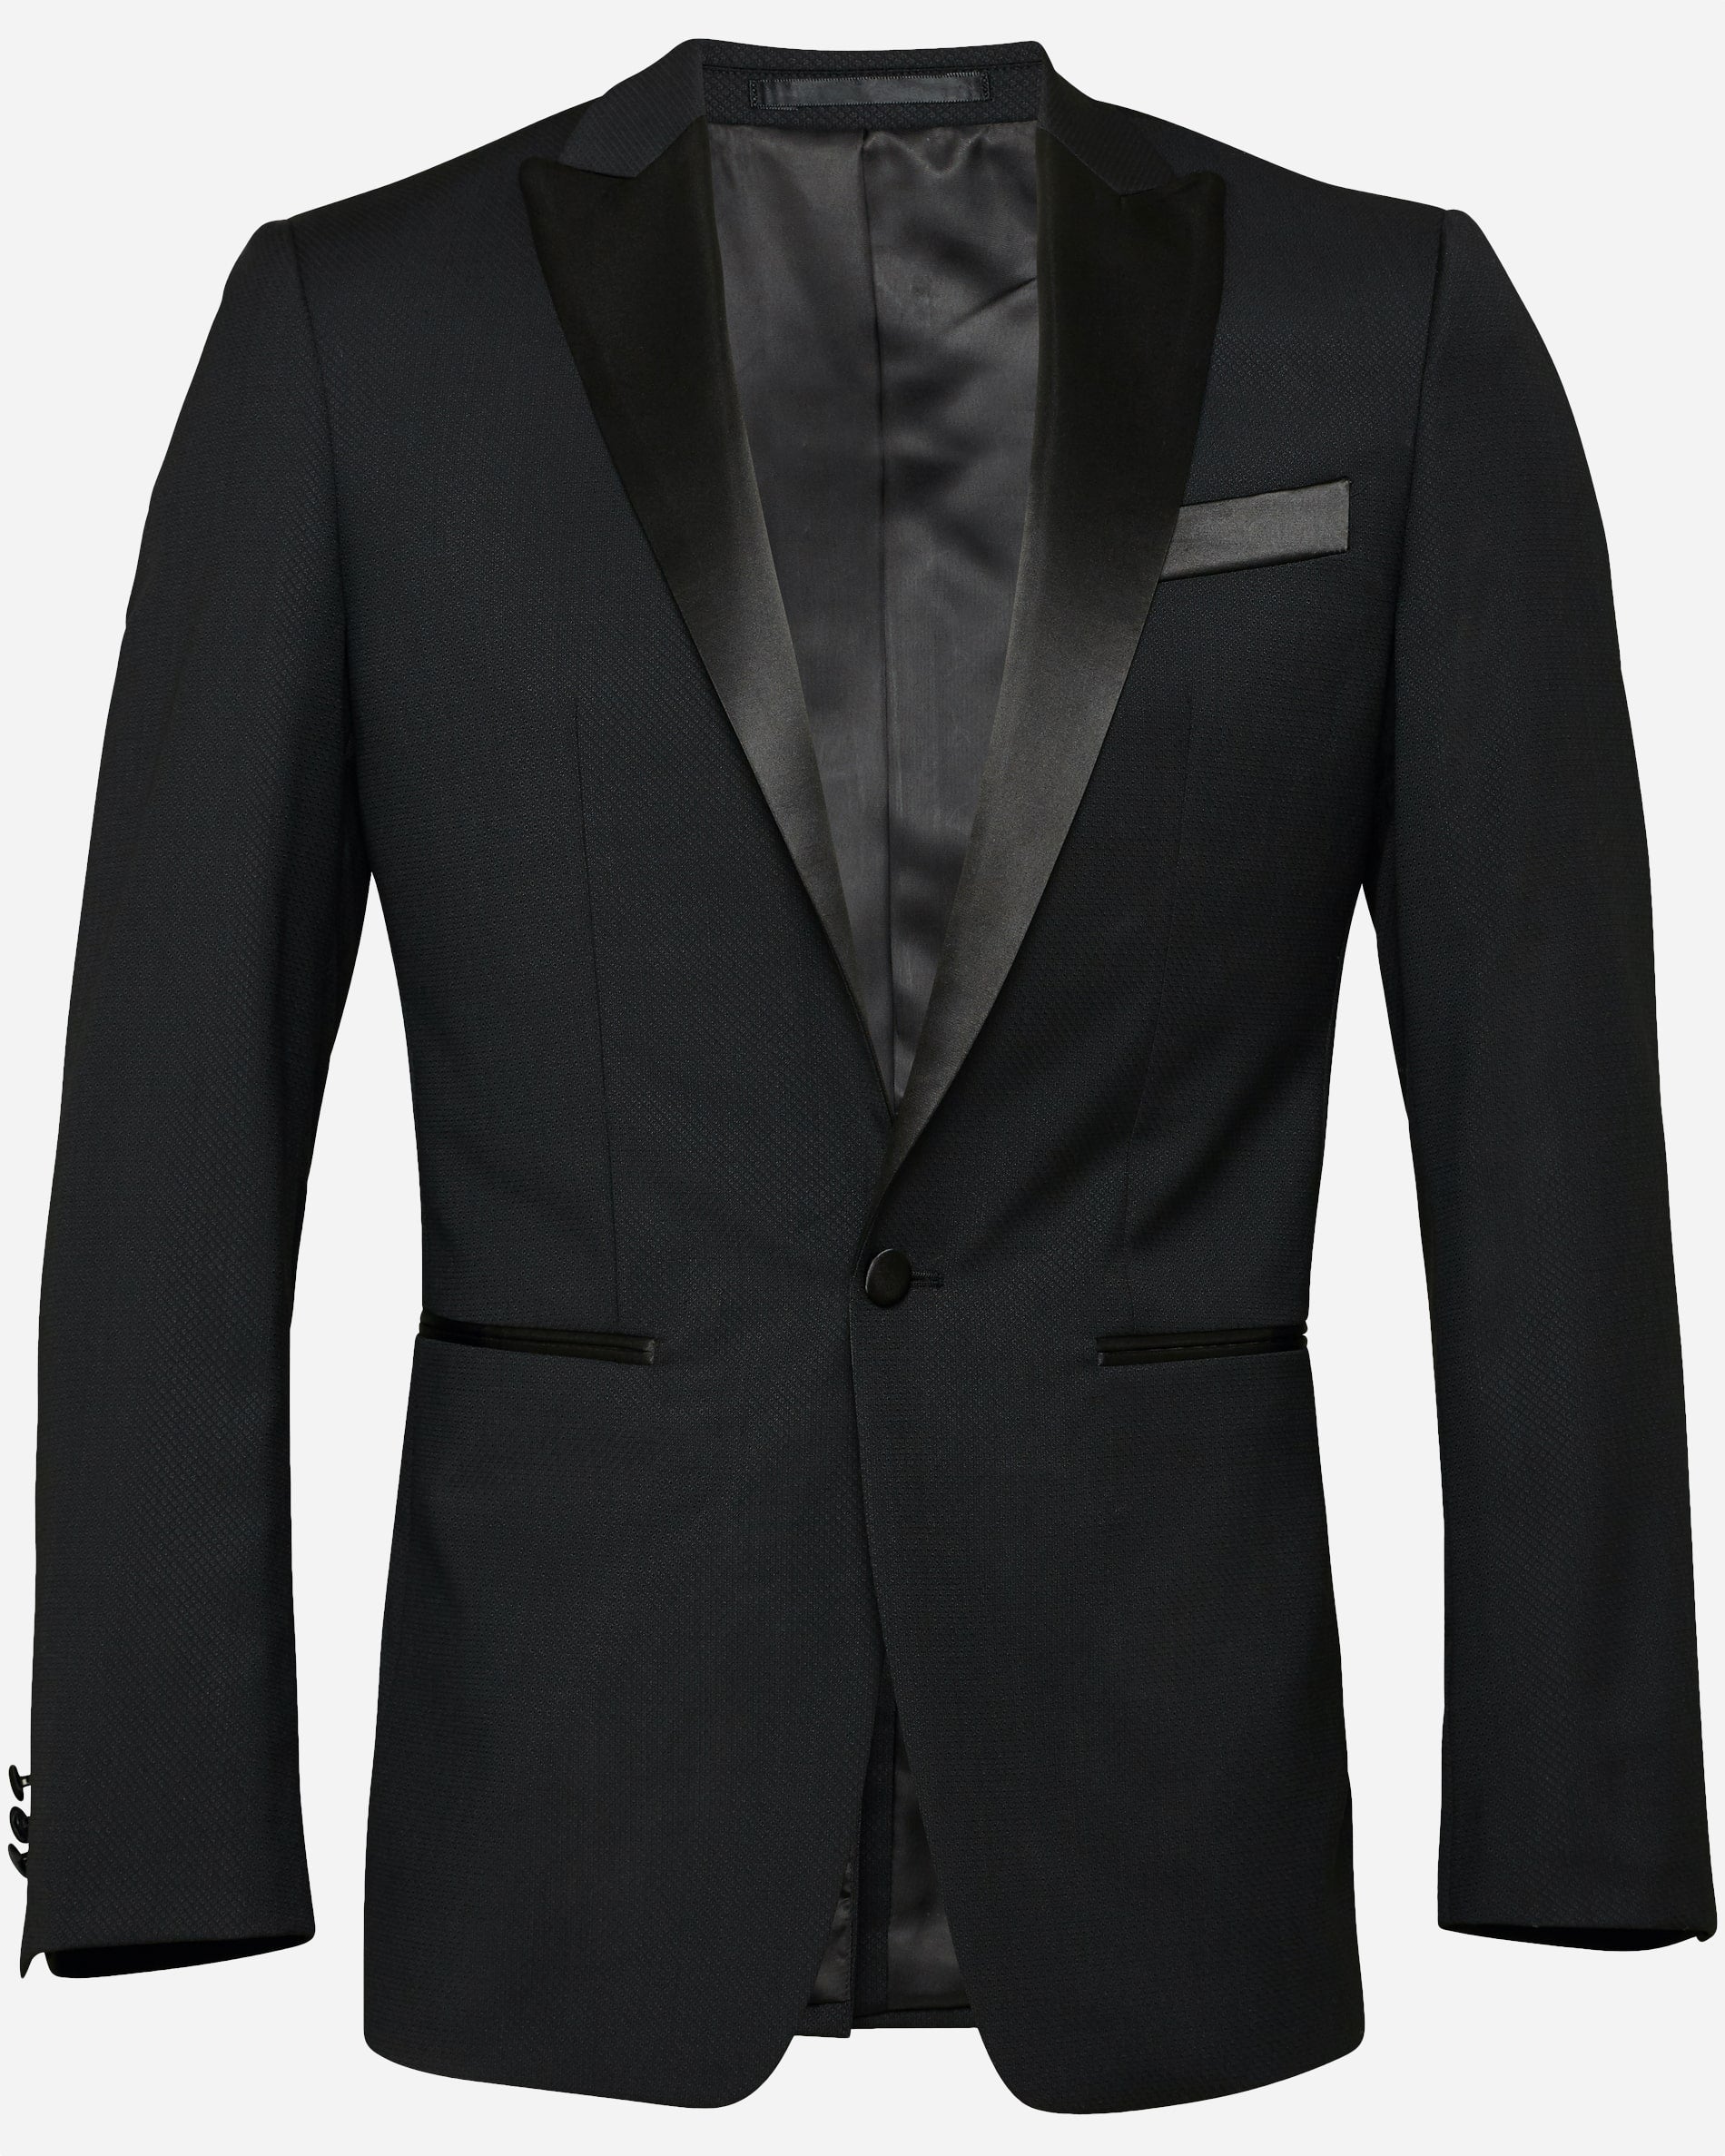 Oscar Dinner Suit - Men's Suits at Menzclub